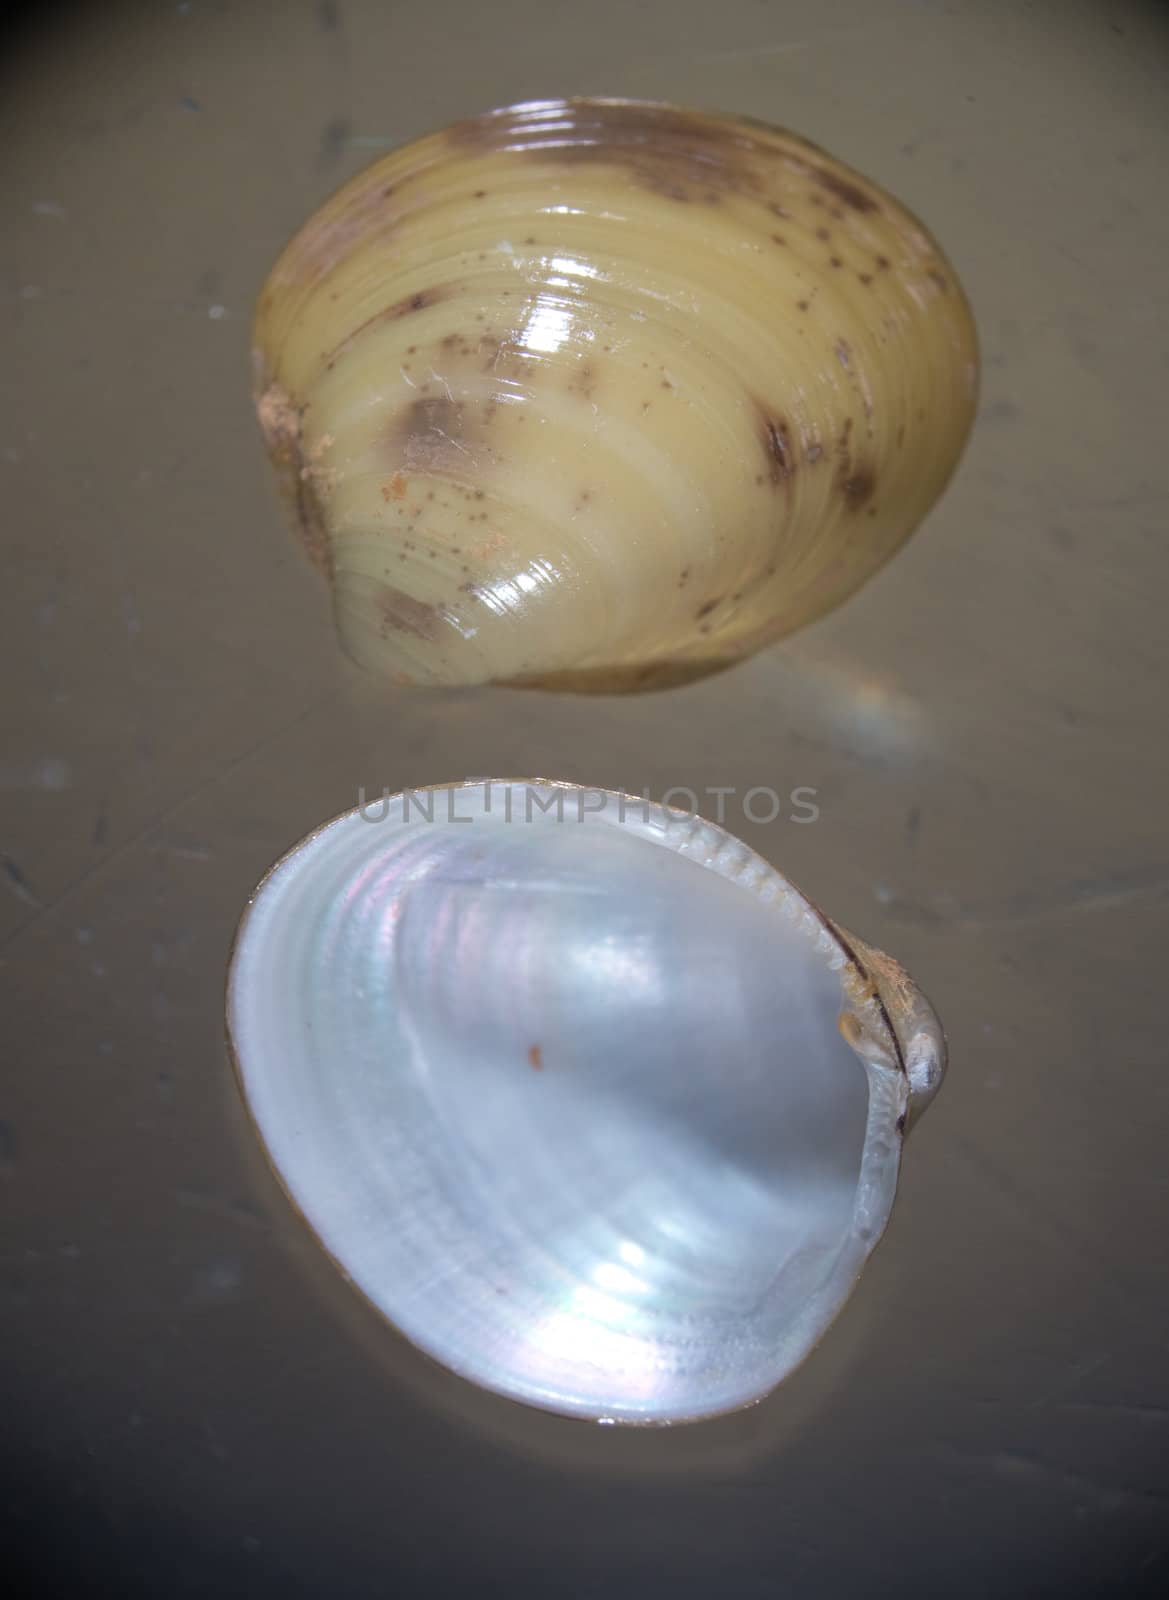 Shells of a bivalve by Arrxxx